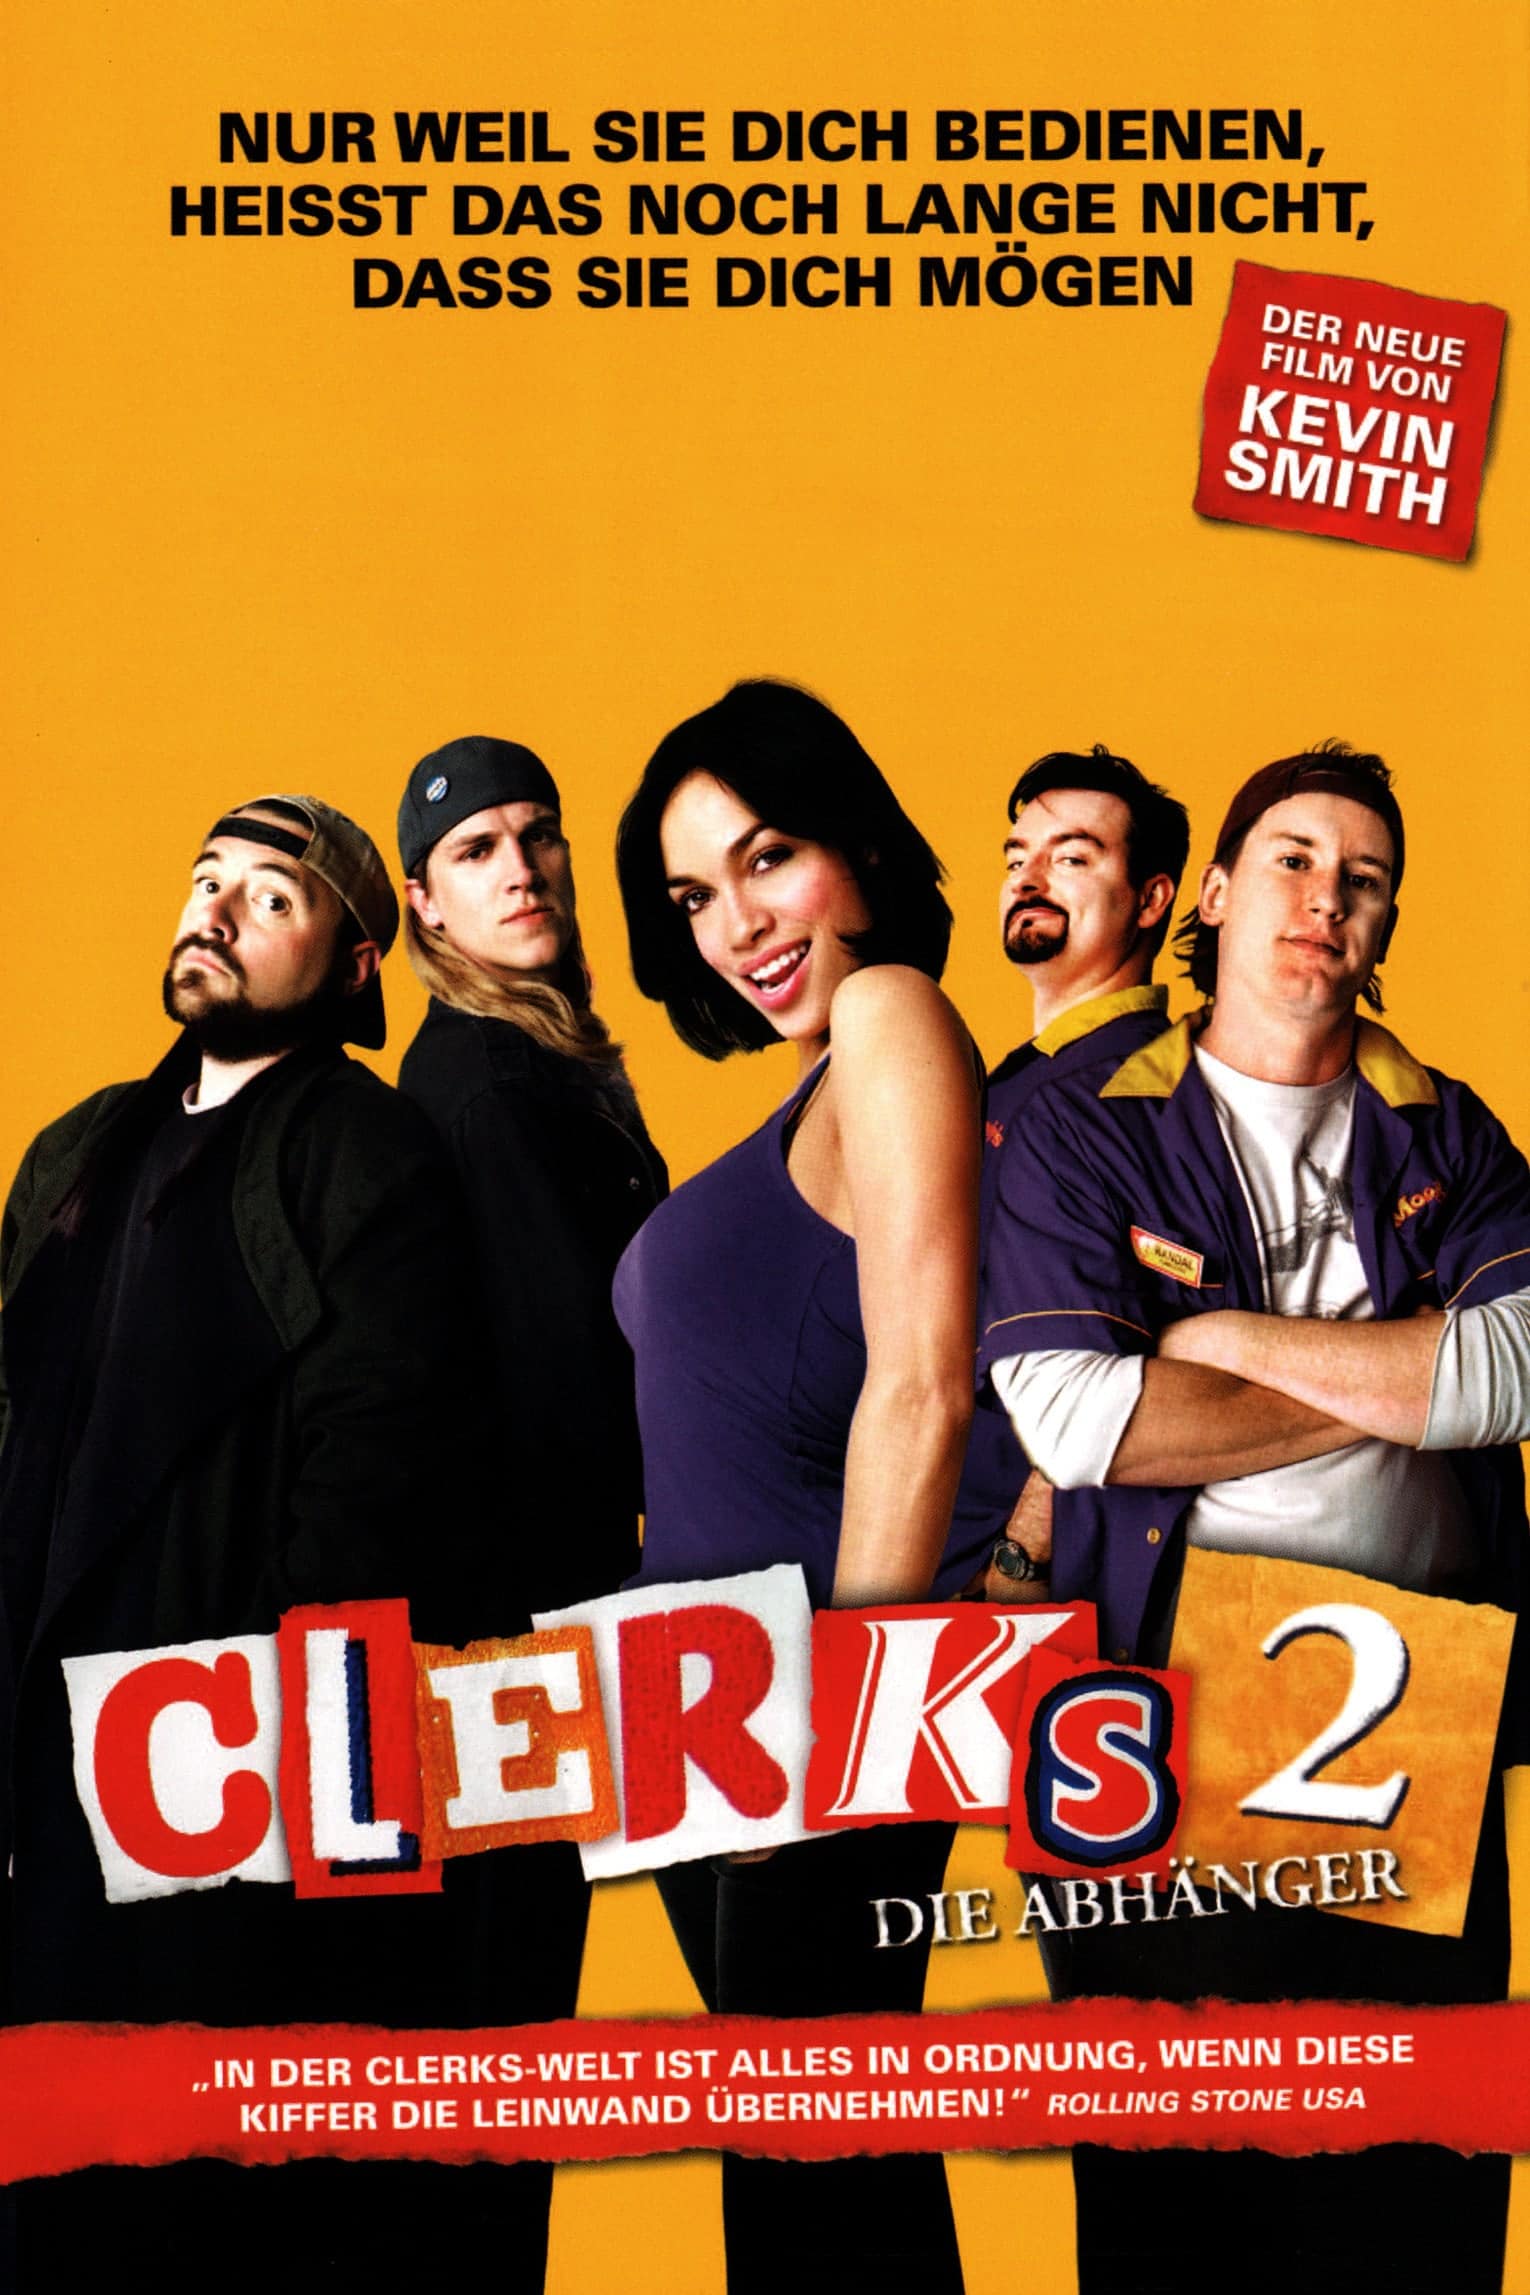 Plakat von "Clerks 2 - Die Abhänger"